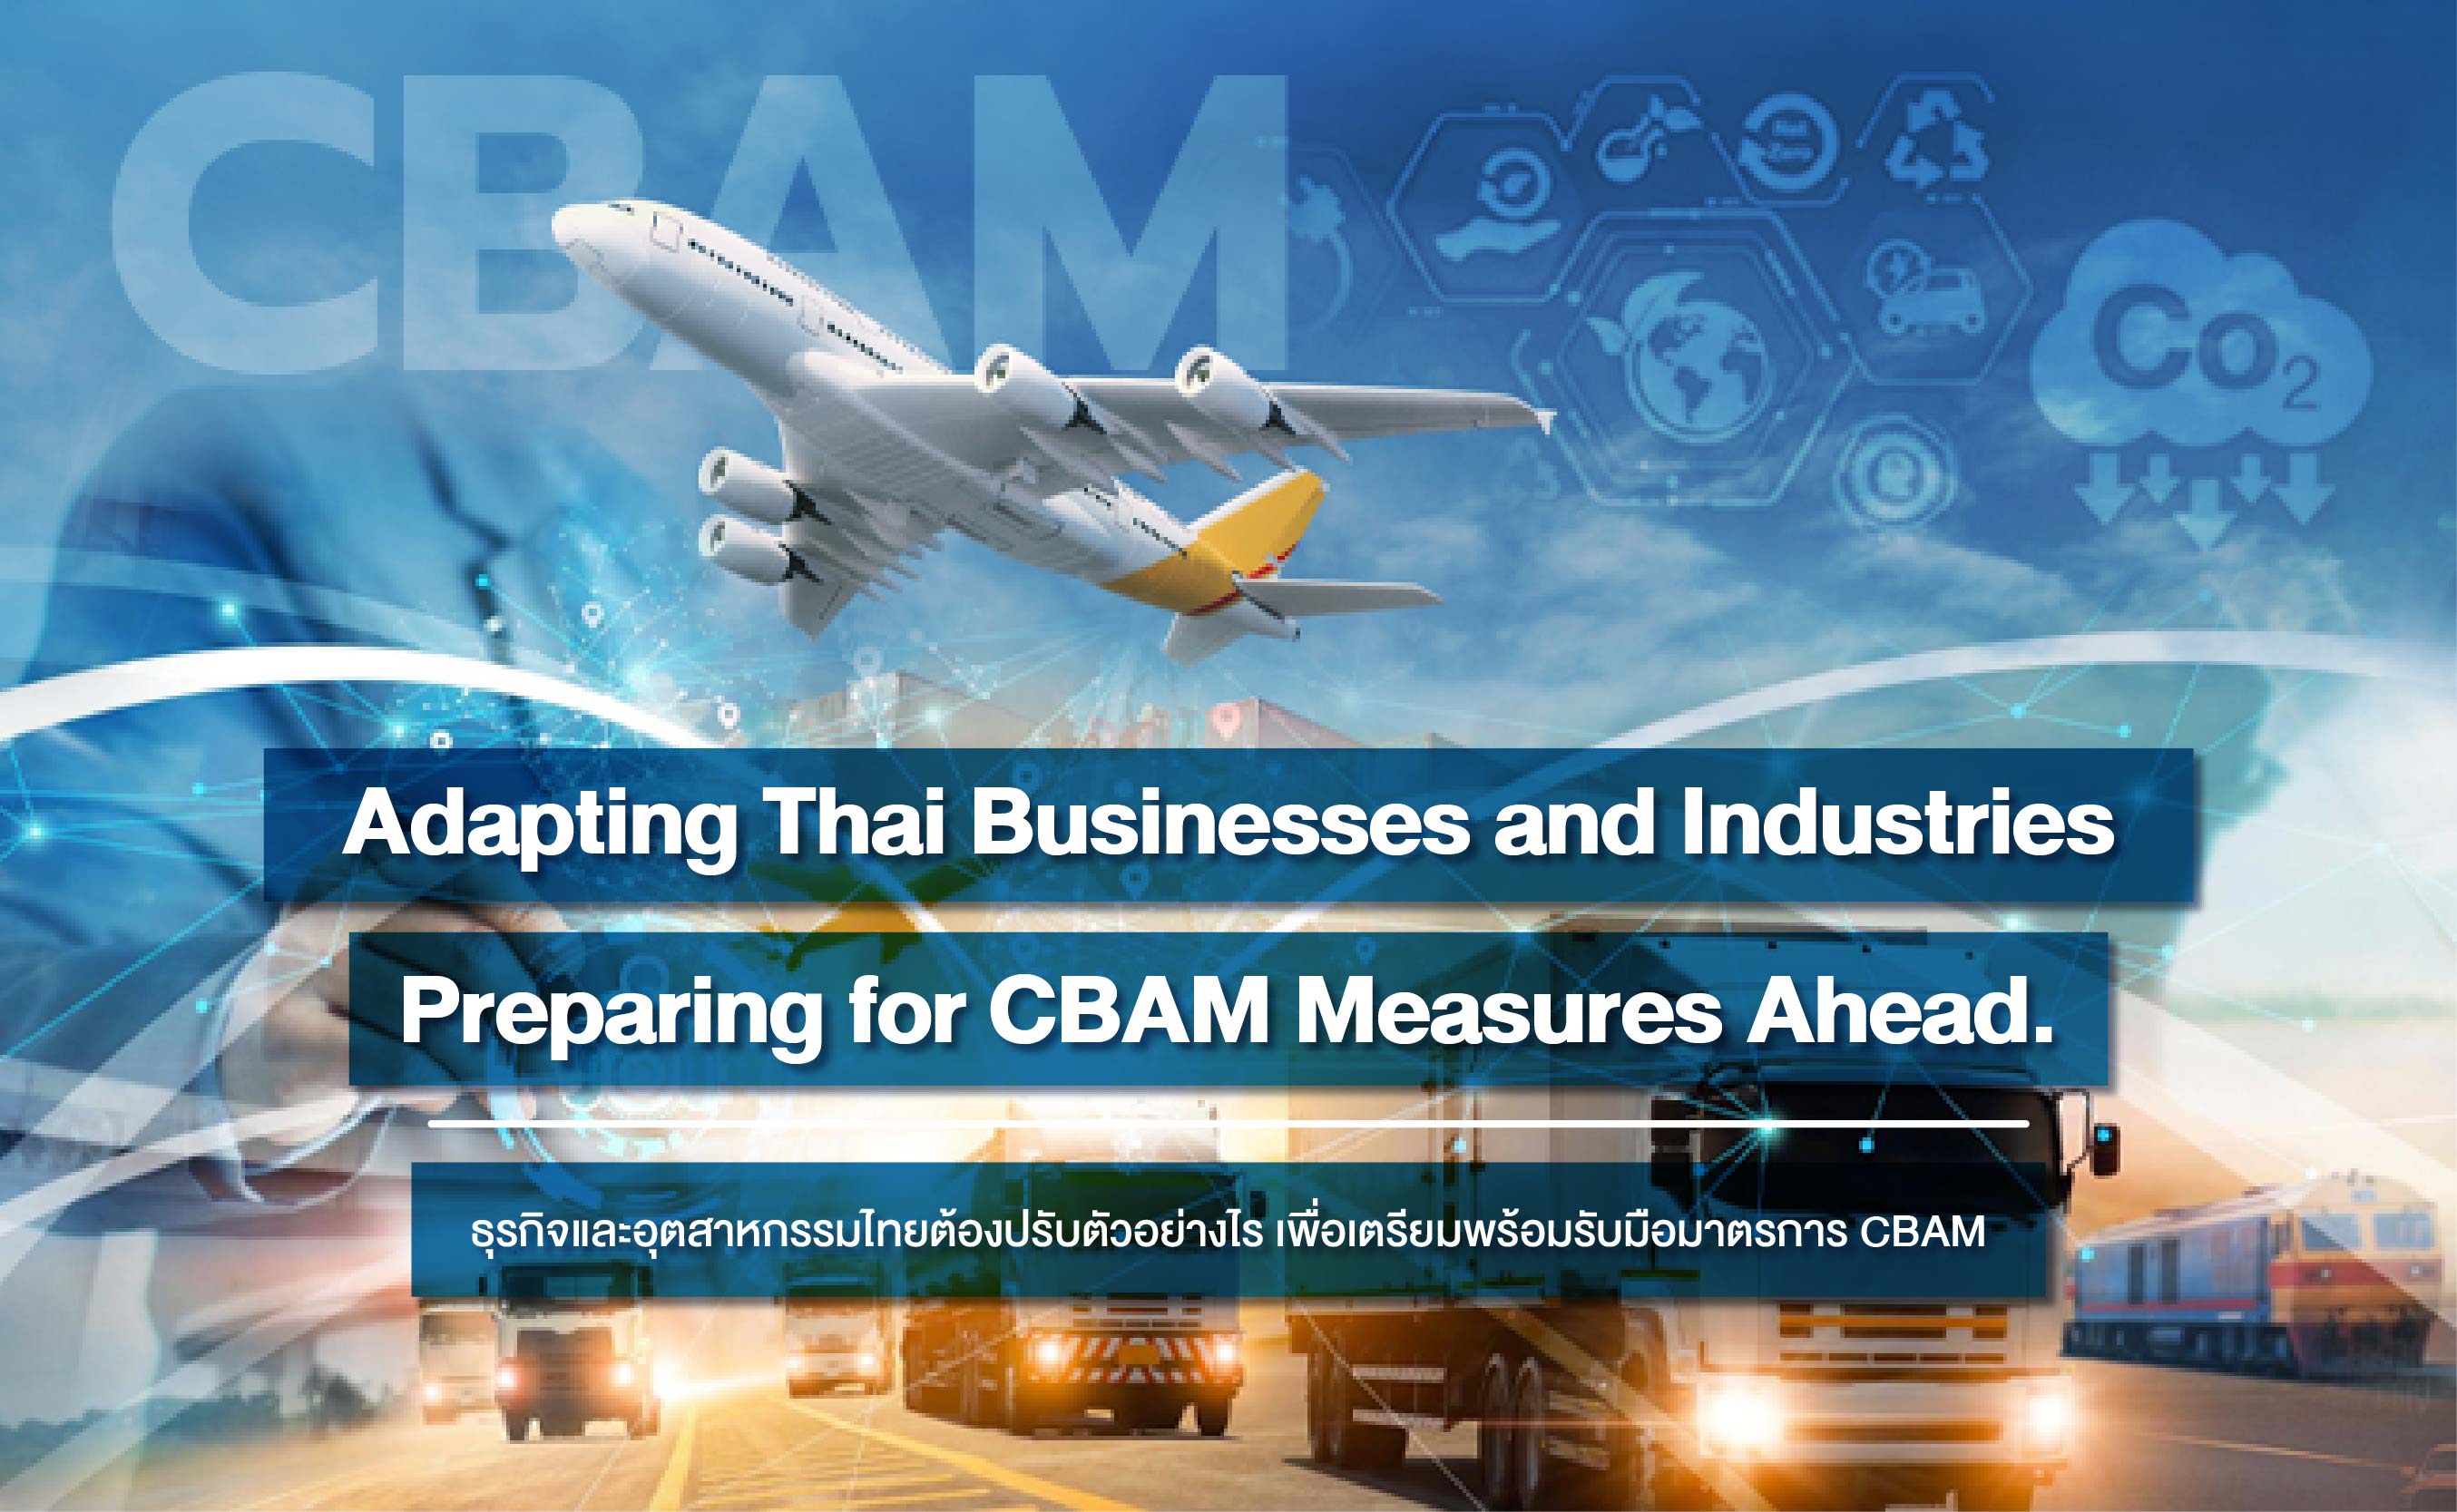 ธุรกิจและอุตสาหกรรมไทยต้องปรับตัวอย่างไร เพื่อเตรียมพร้อมรับมือมาตรการ CBAM 